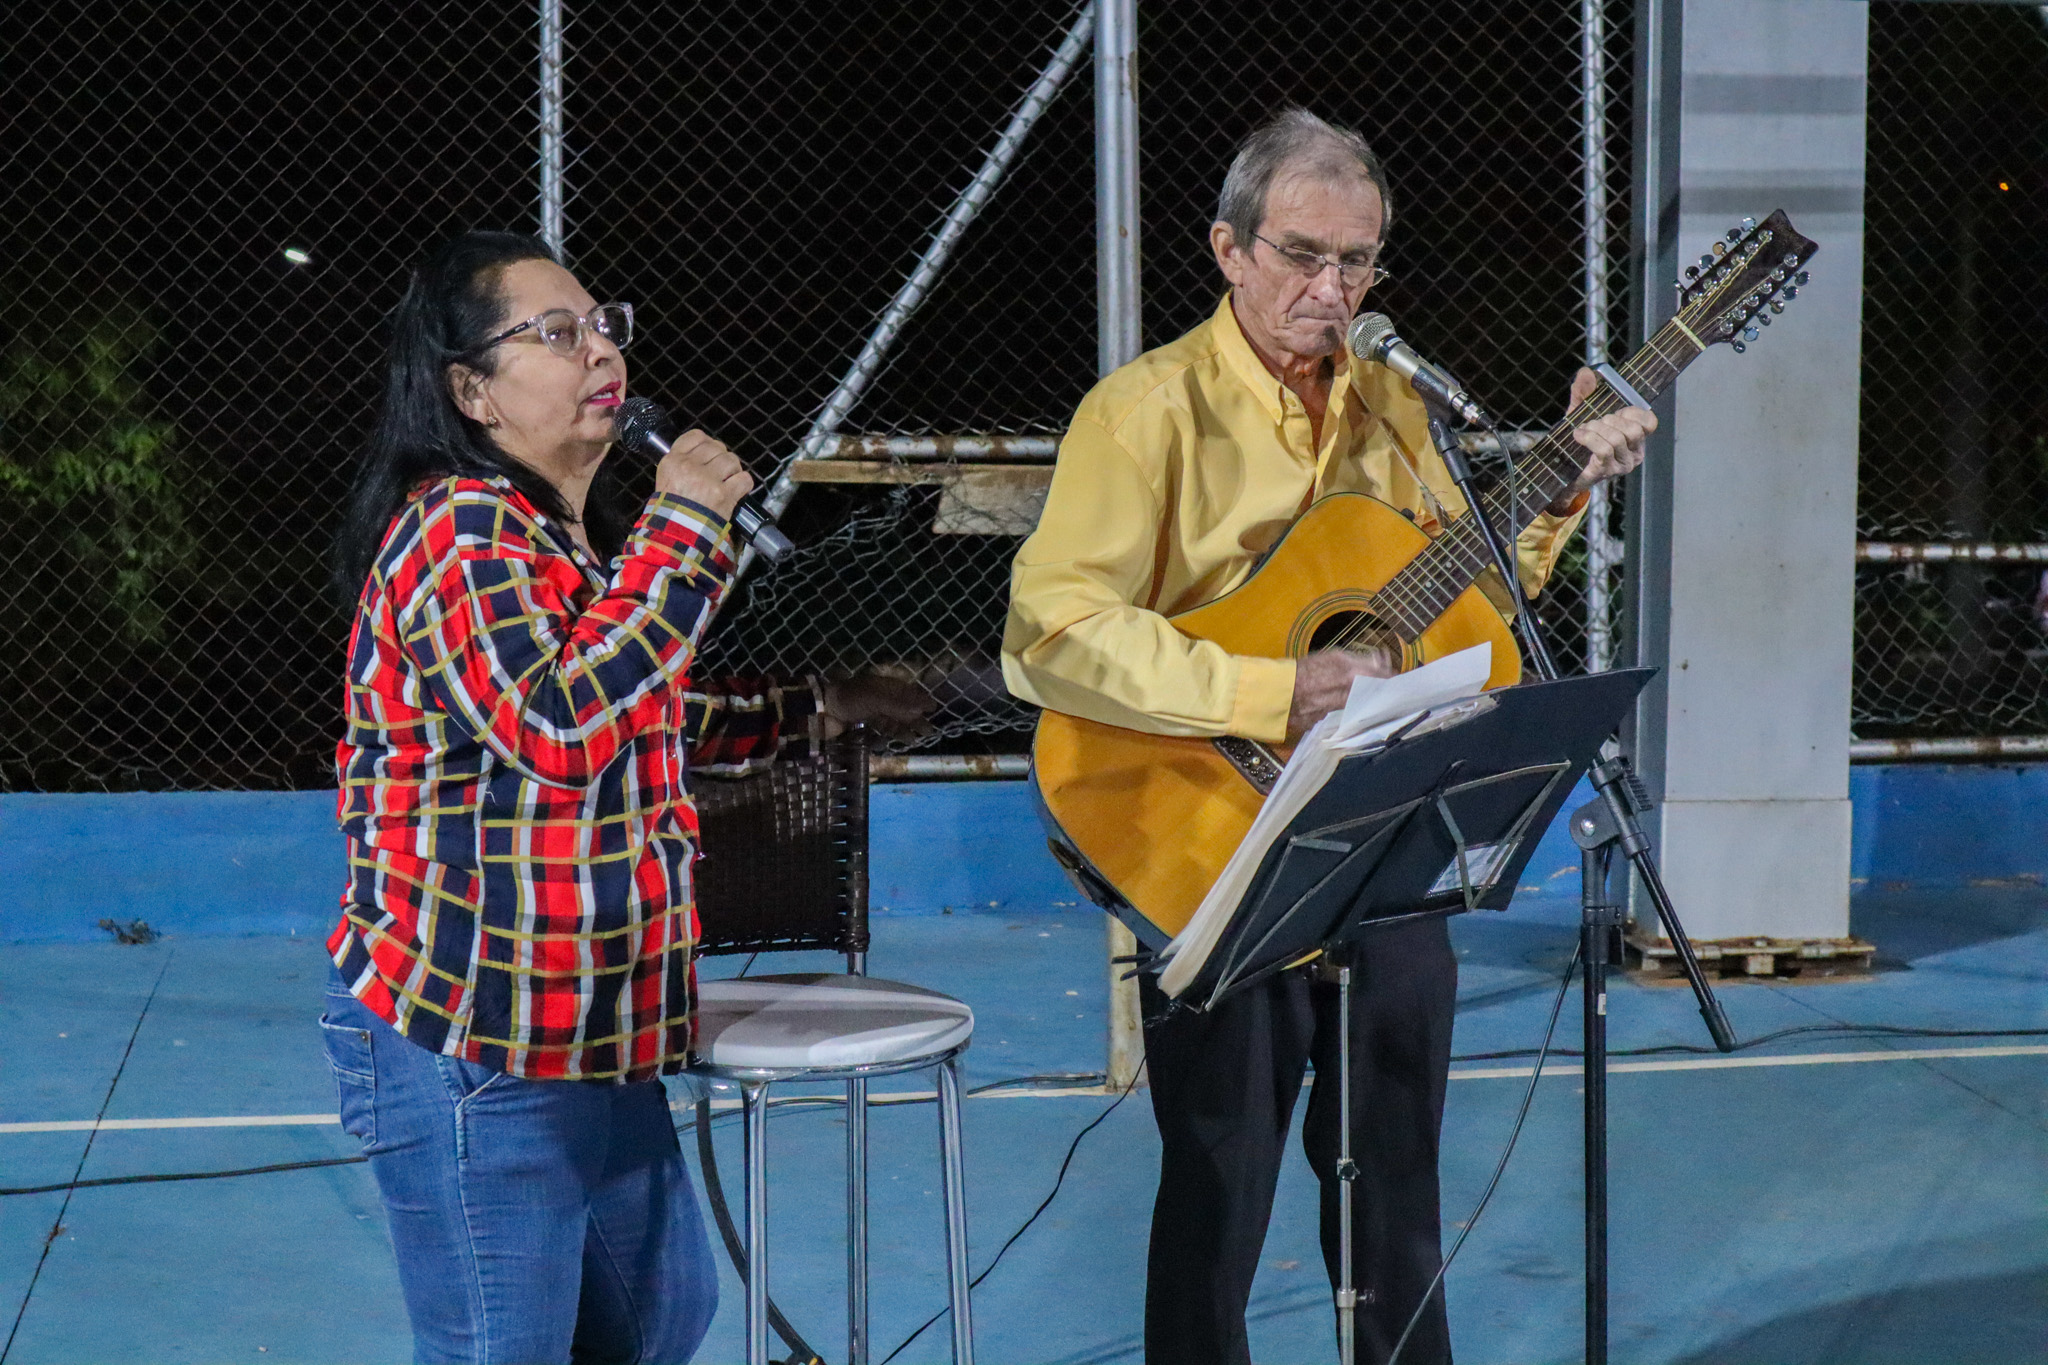 Cantores urupeenses Angela e Iá em apresentação na segunda noite da virada cultural no bairro boa vista em Urupês